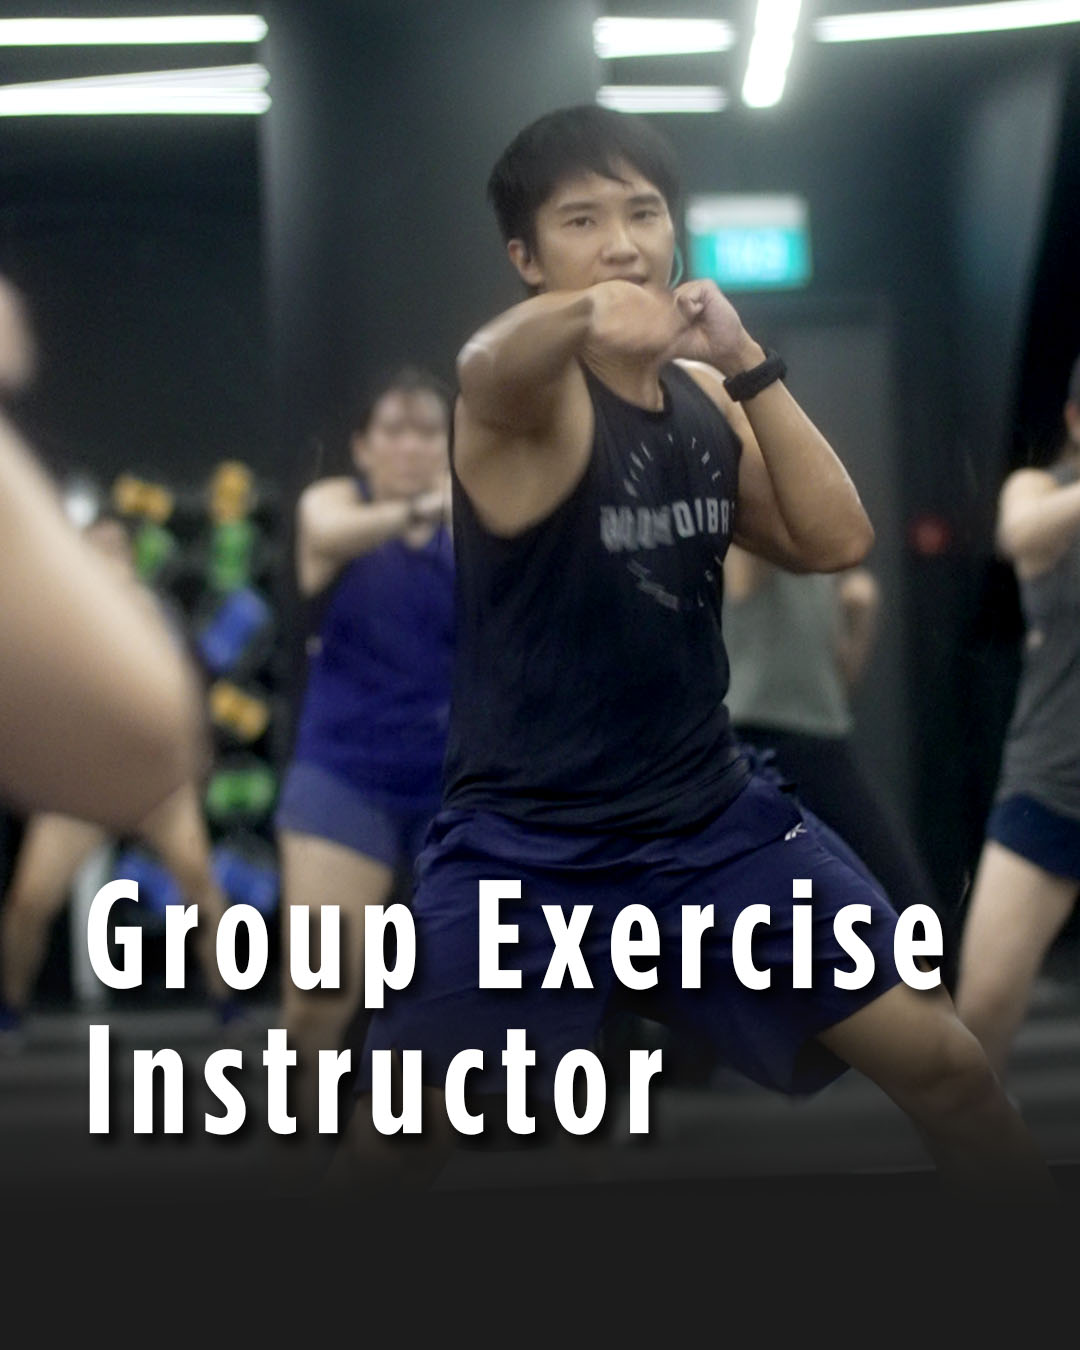 GroupX Instructor